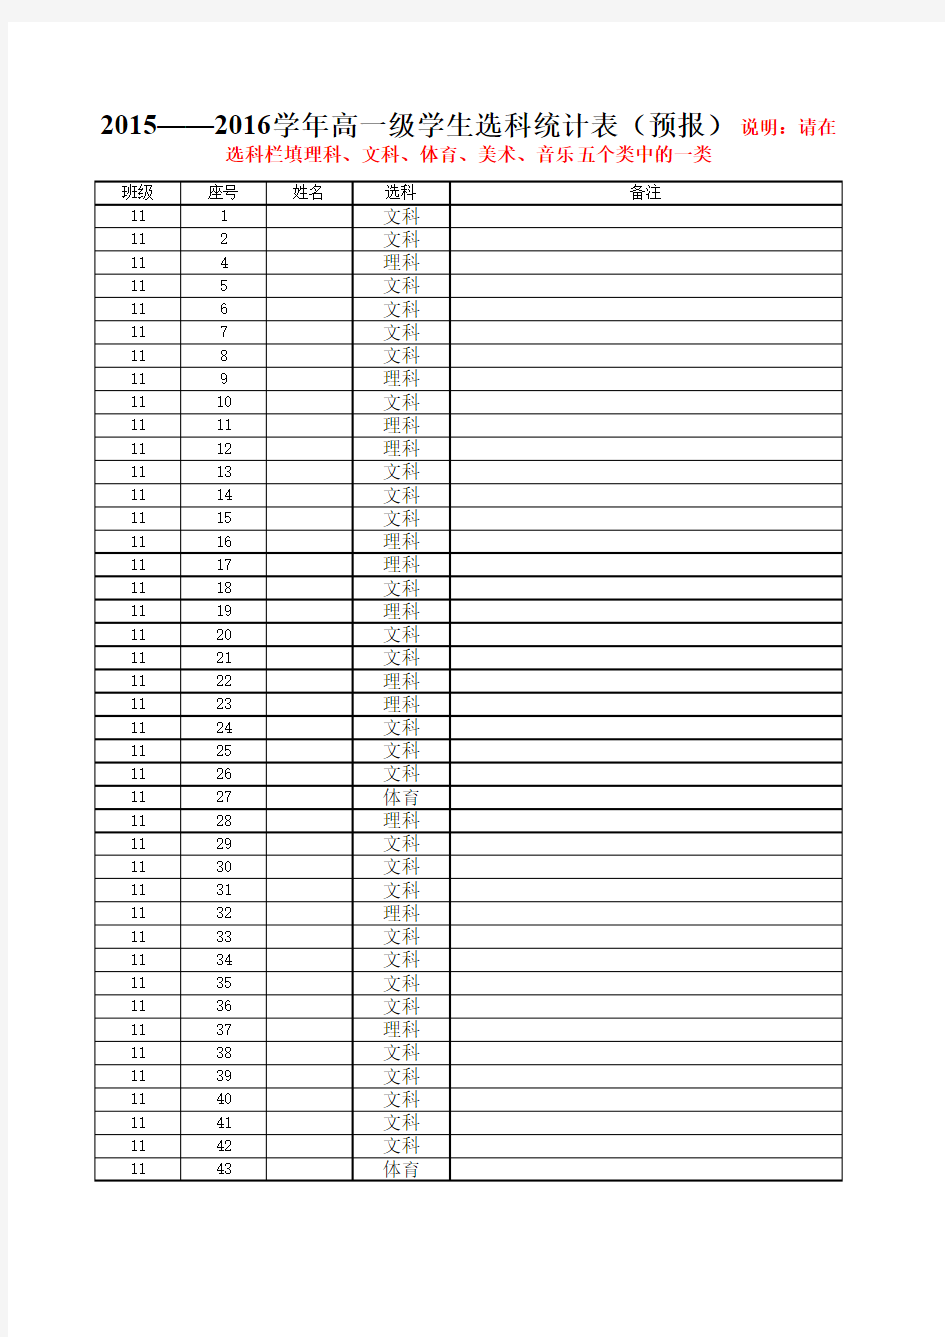 高一级学生选科统计表(高一11班)